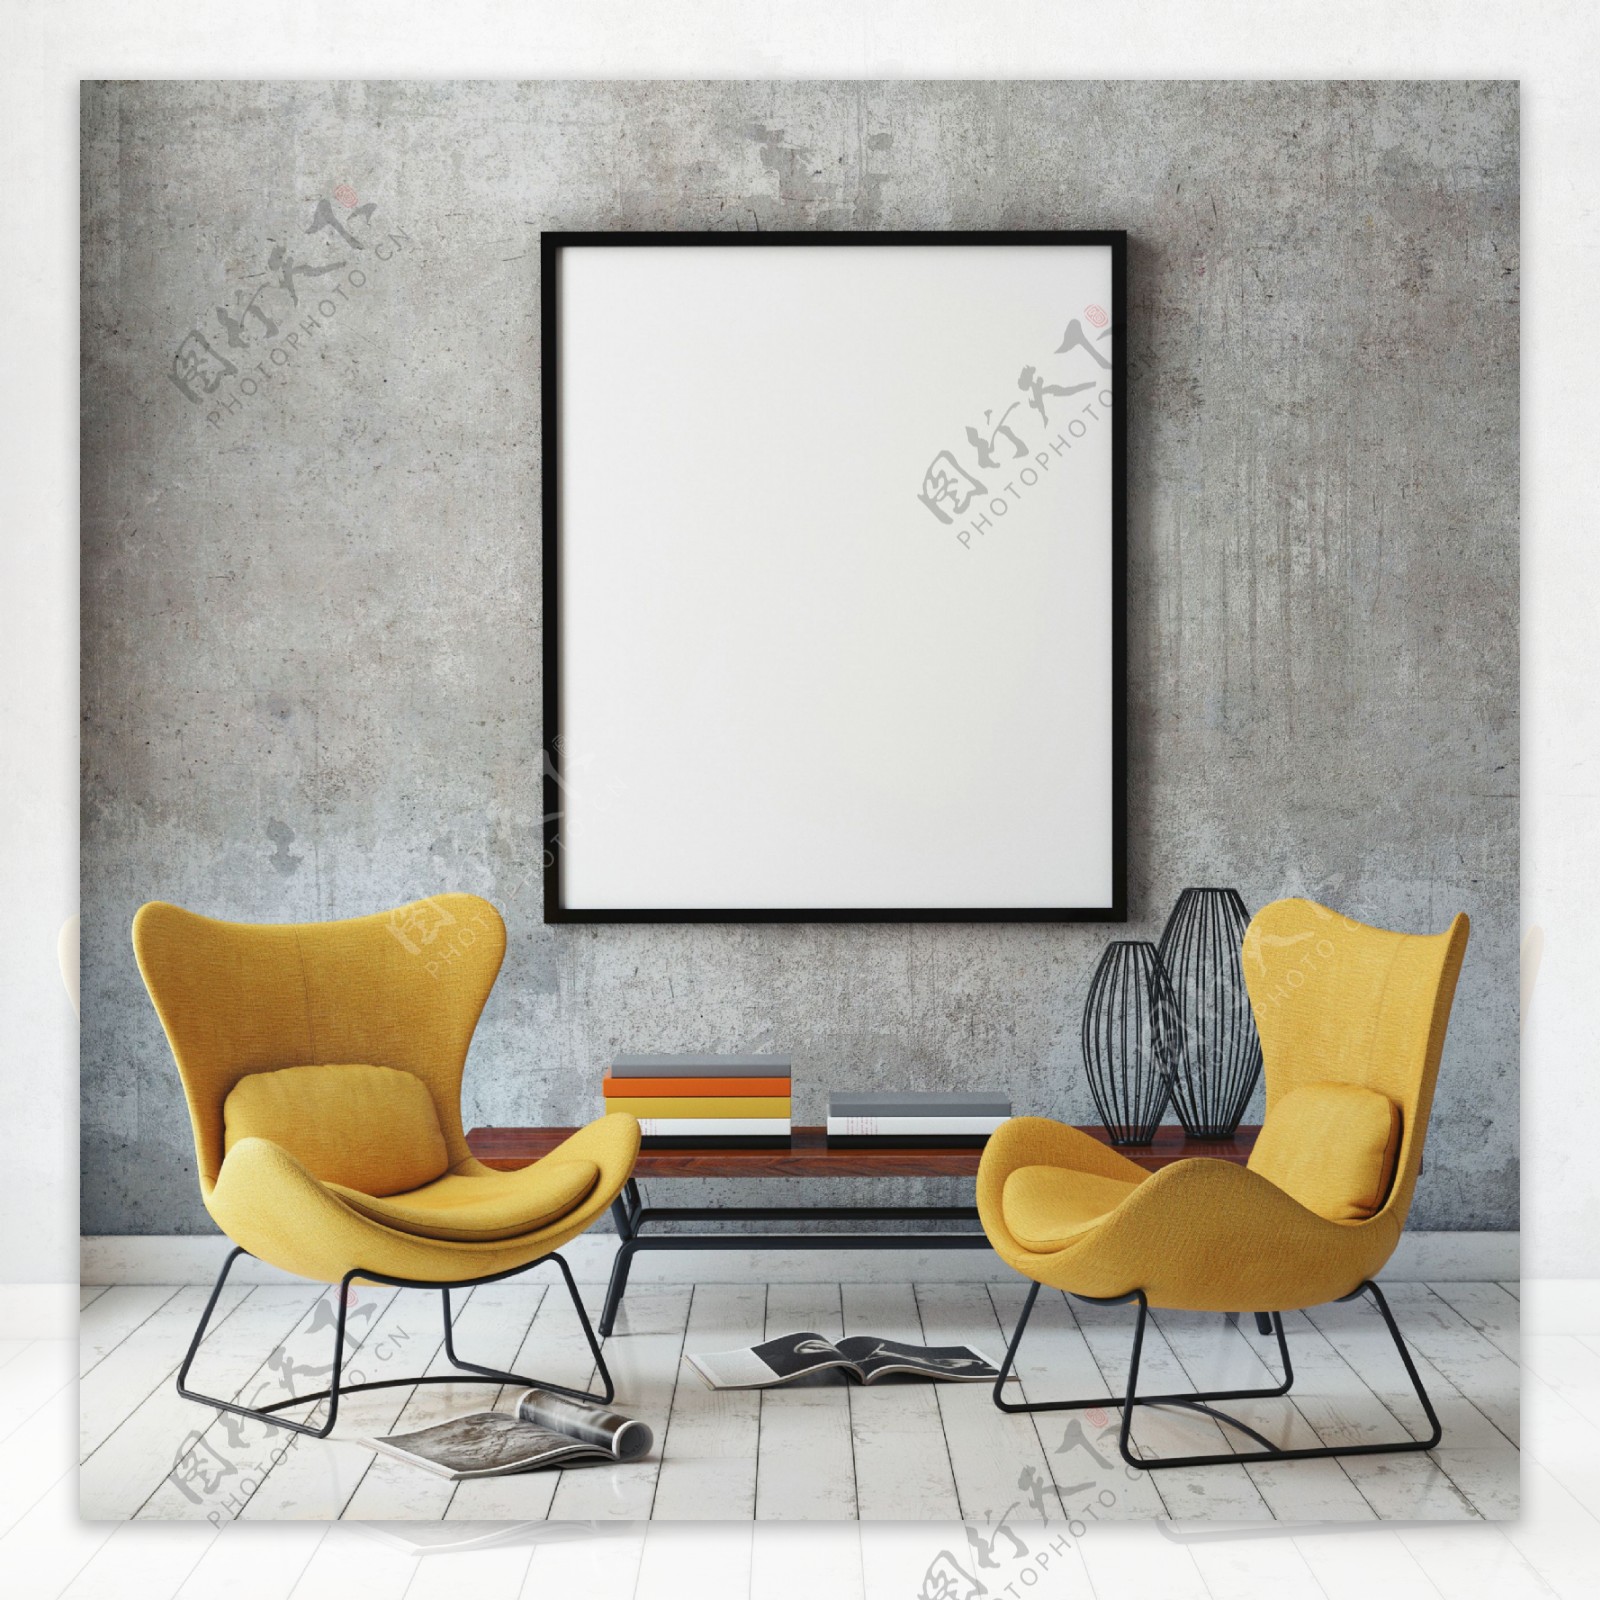 黄色椅子与白色画框